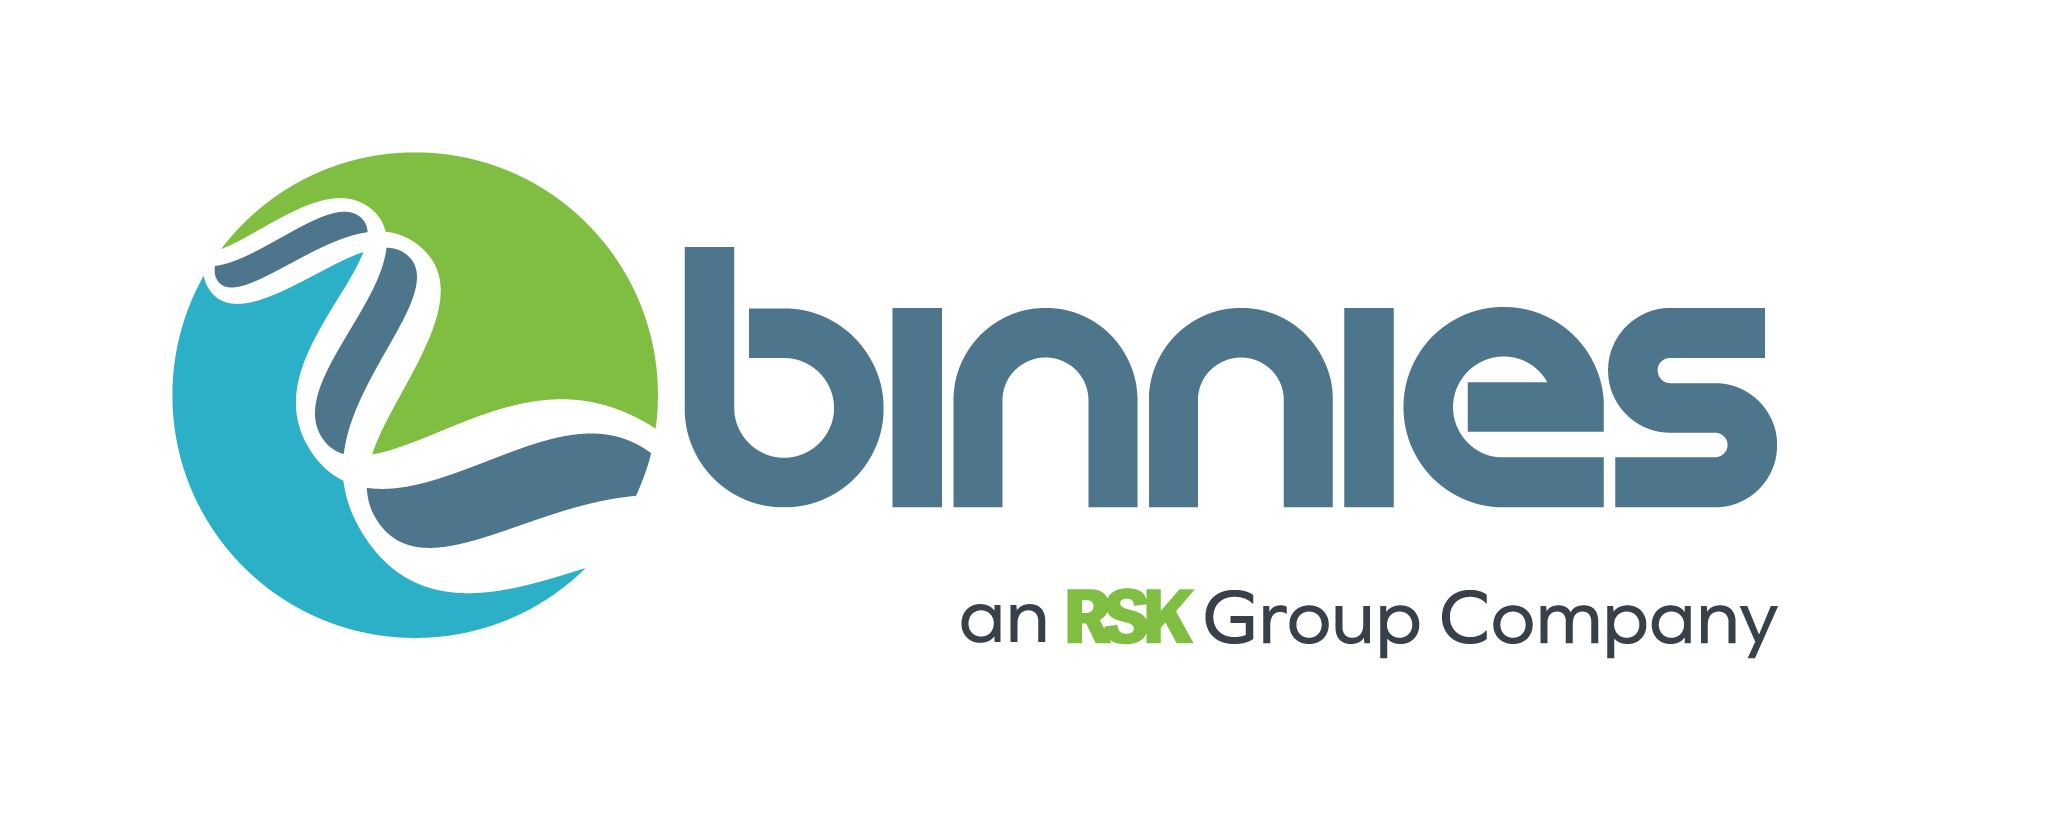 binnies_logo_pantone_rsk group